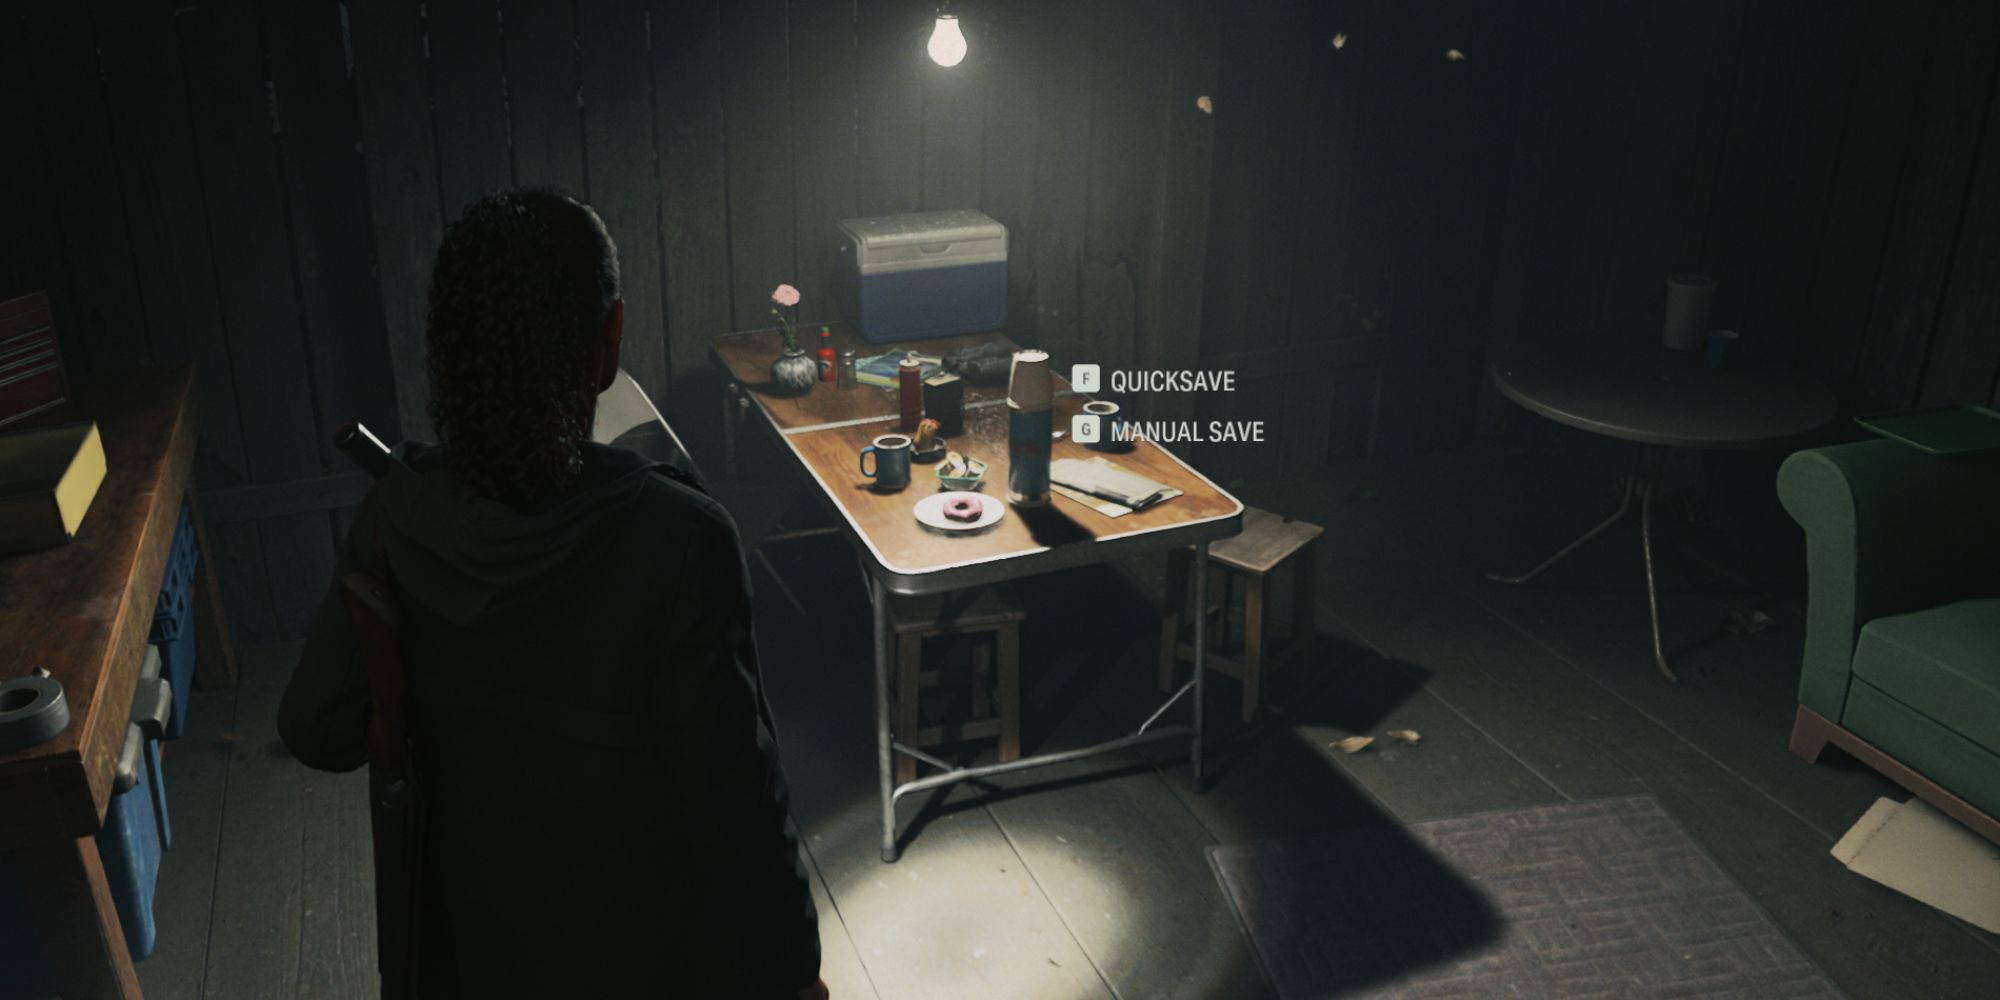 Сага Андерсон использует кофе для сохранения игры в Alan Wake 2